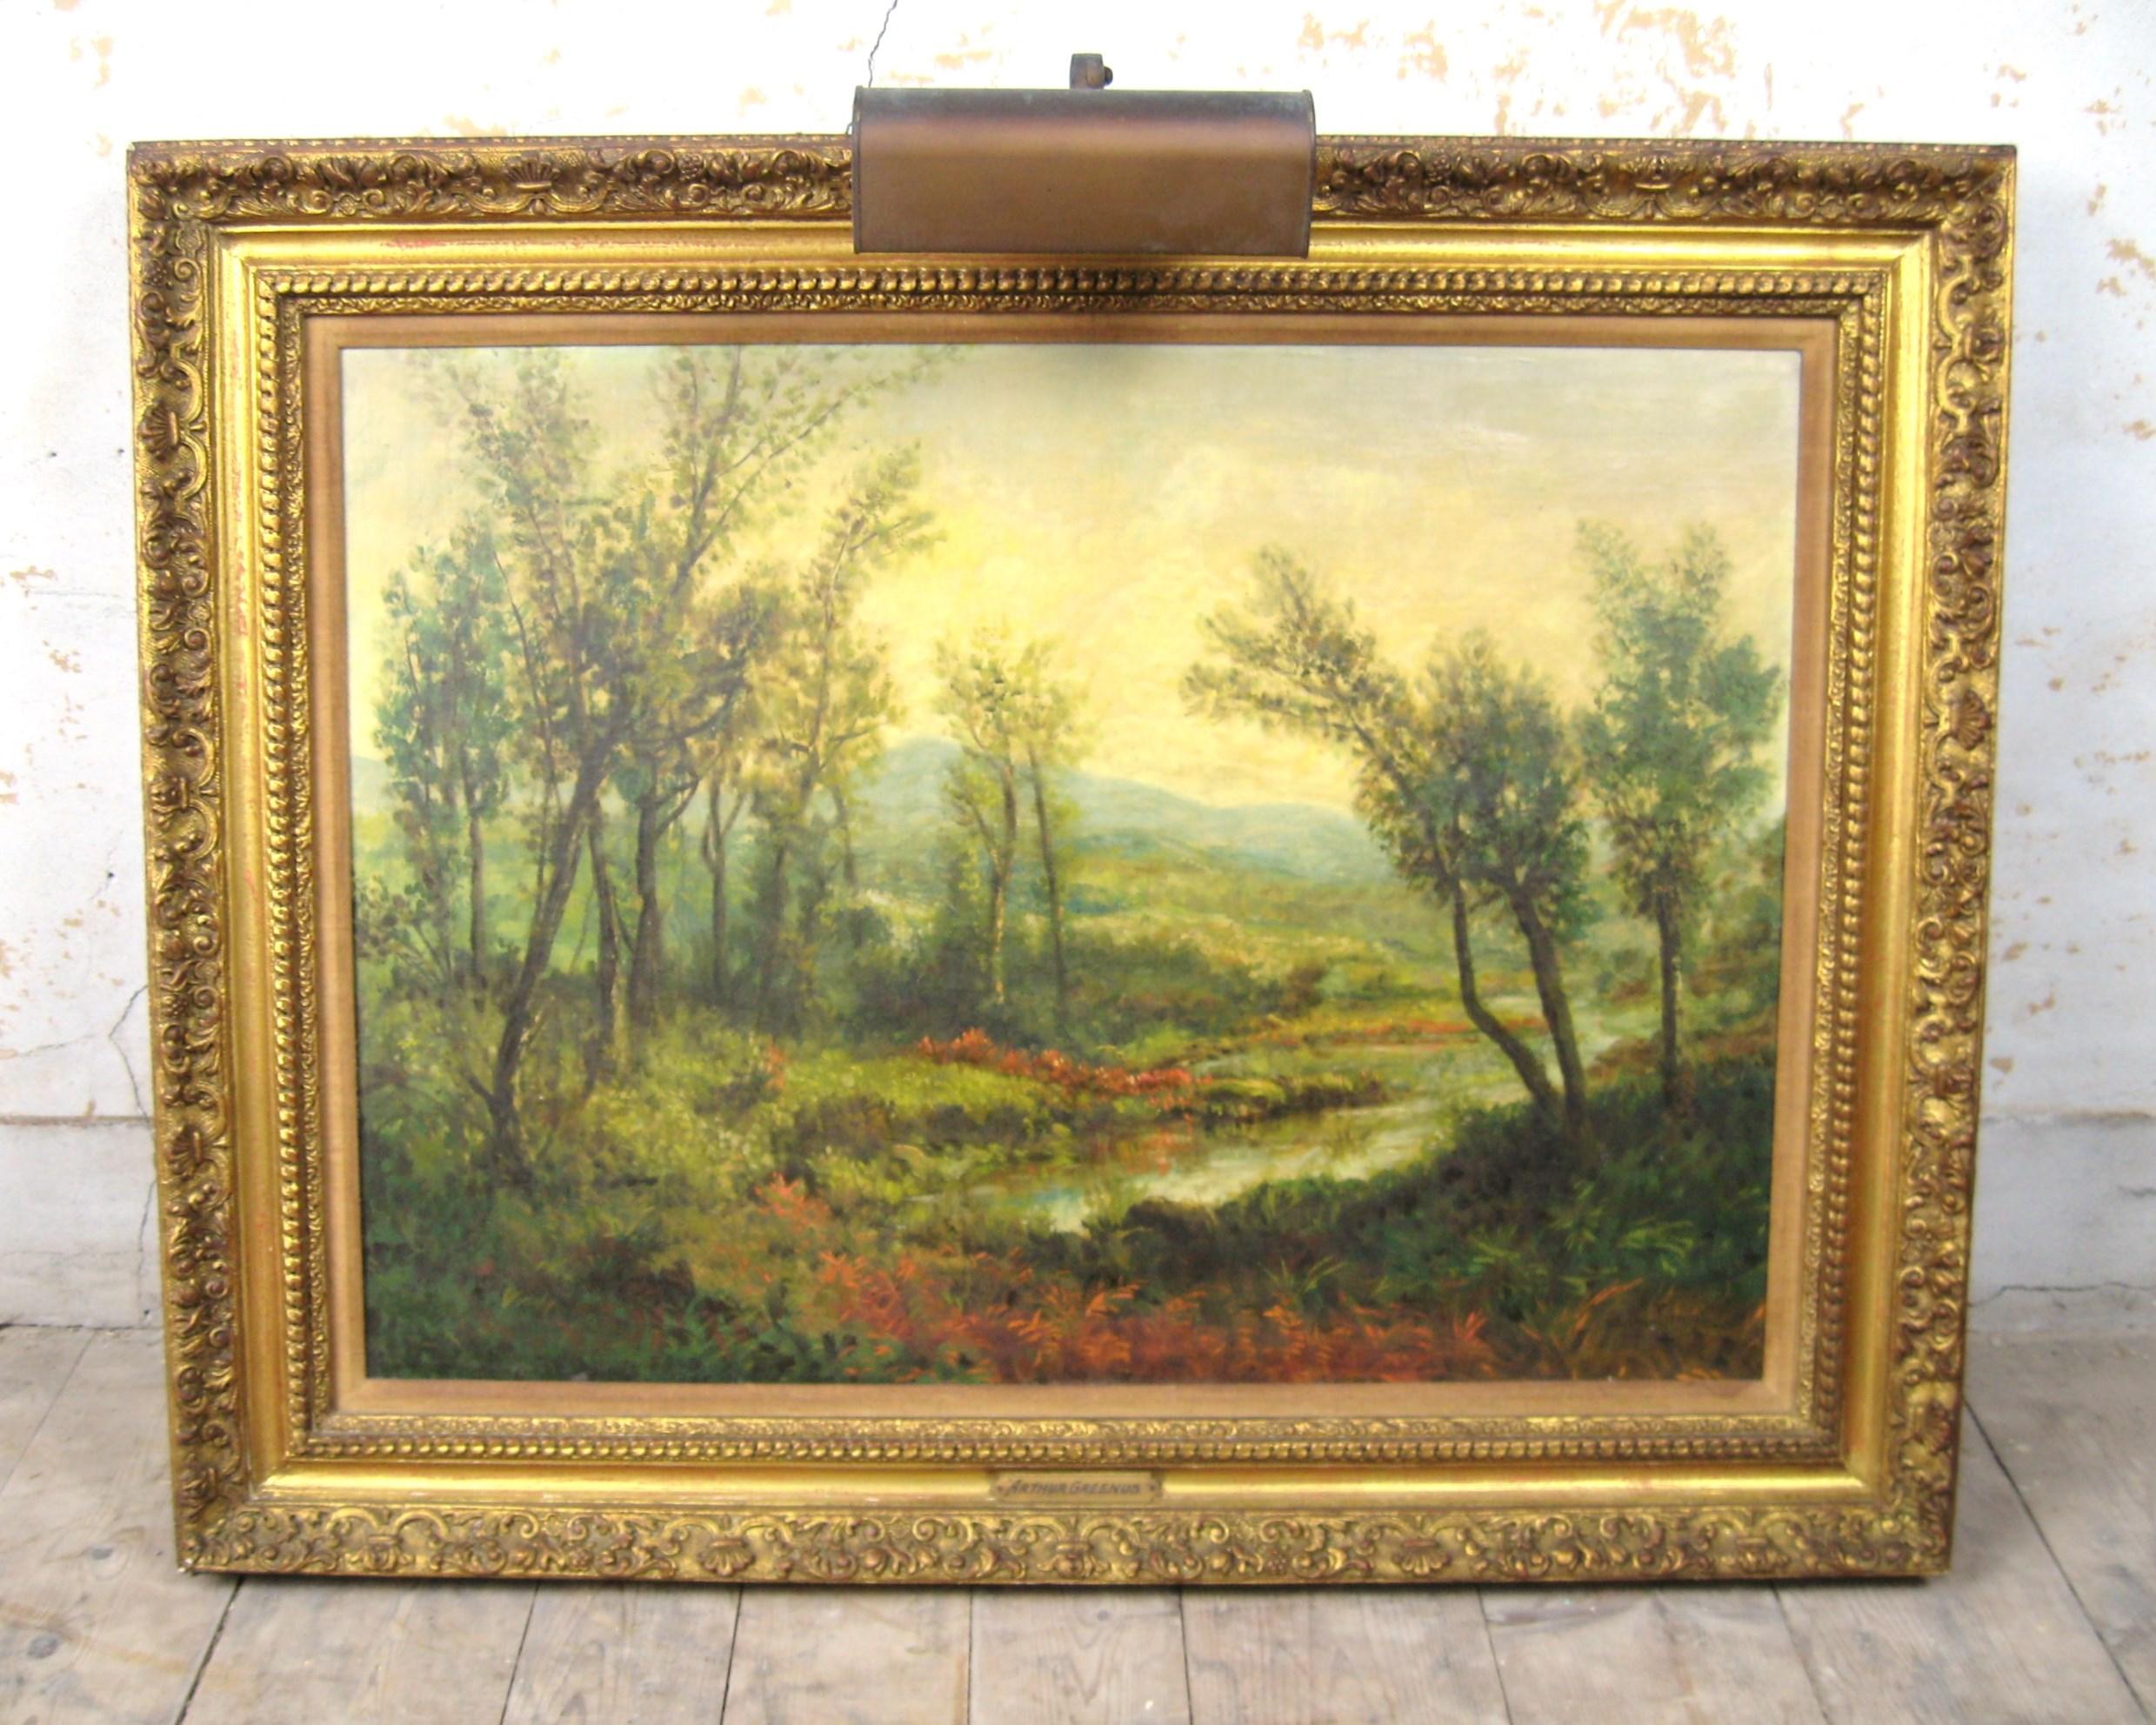 Wunderschöne ruhige ländliche Szene auf diesem Öl auf Leinwand Arthur Greenus Gemälde. Ein wenig über den Künstler unten 

Geboren im Jahr 1919. Aktiv in den Vereinigten Staaten und bekannt für Landschaften. Dieses Stück zeigt eine Lichtung im Wald.